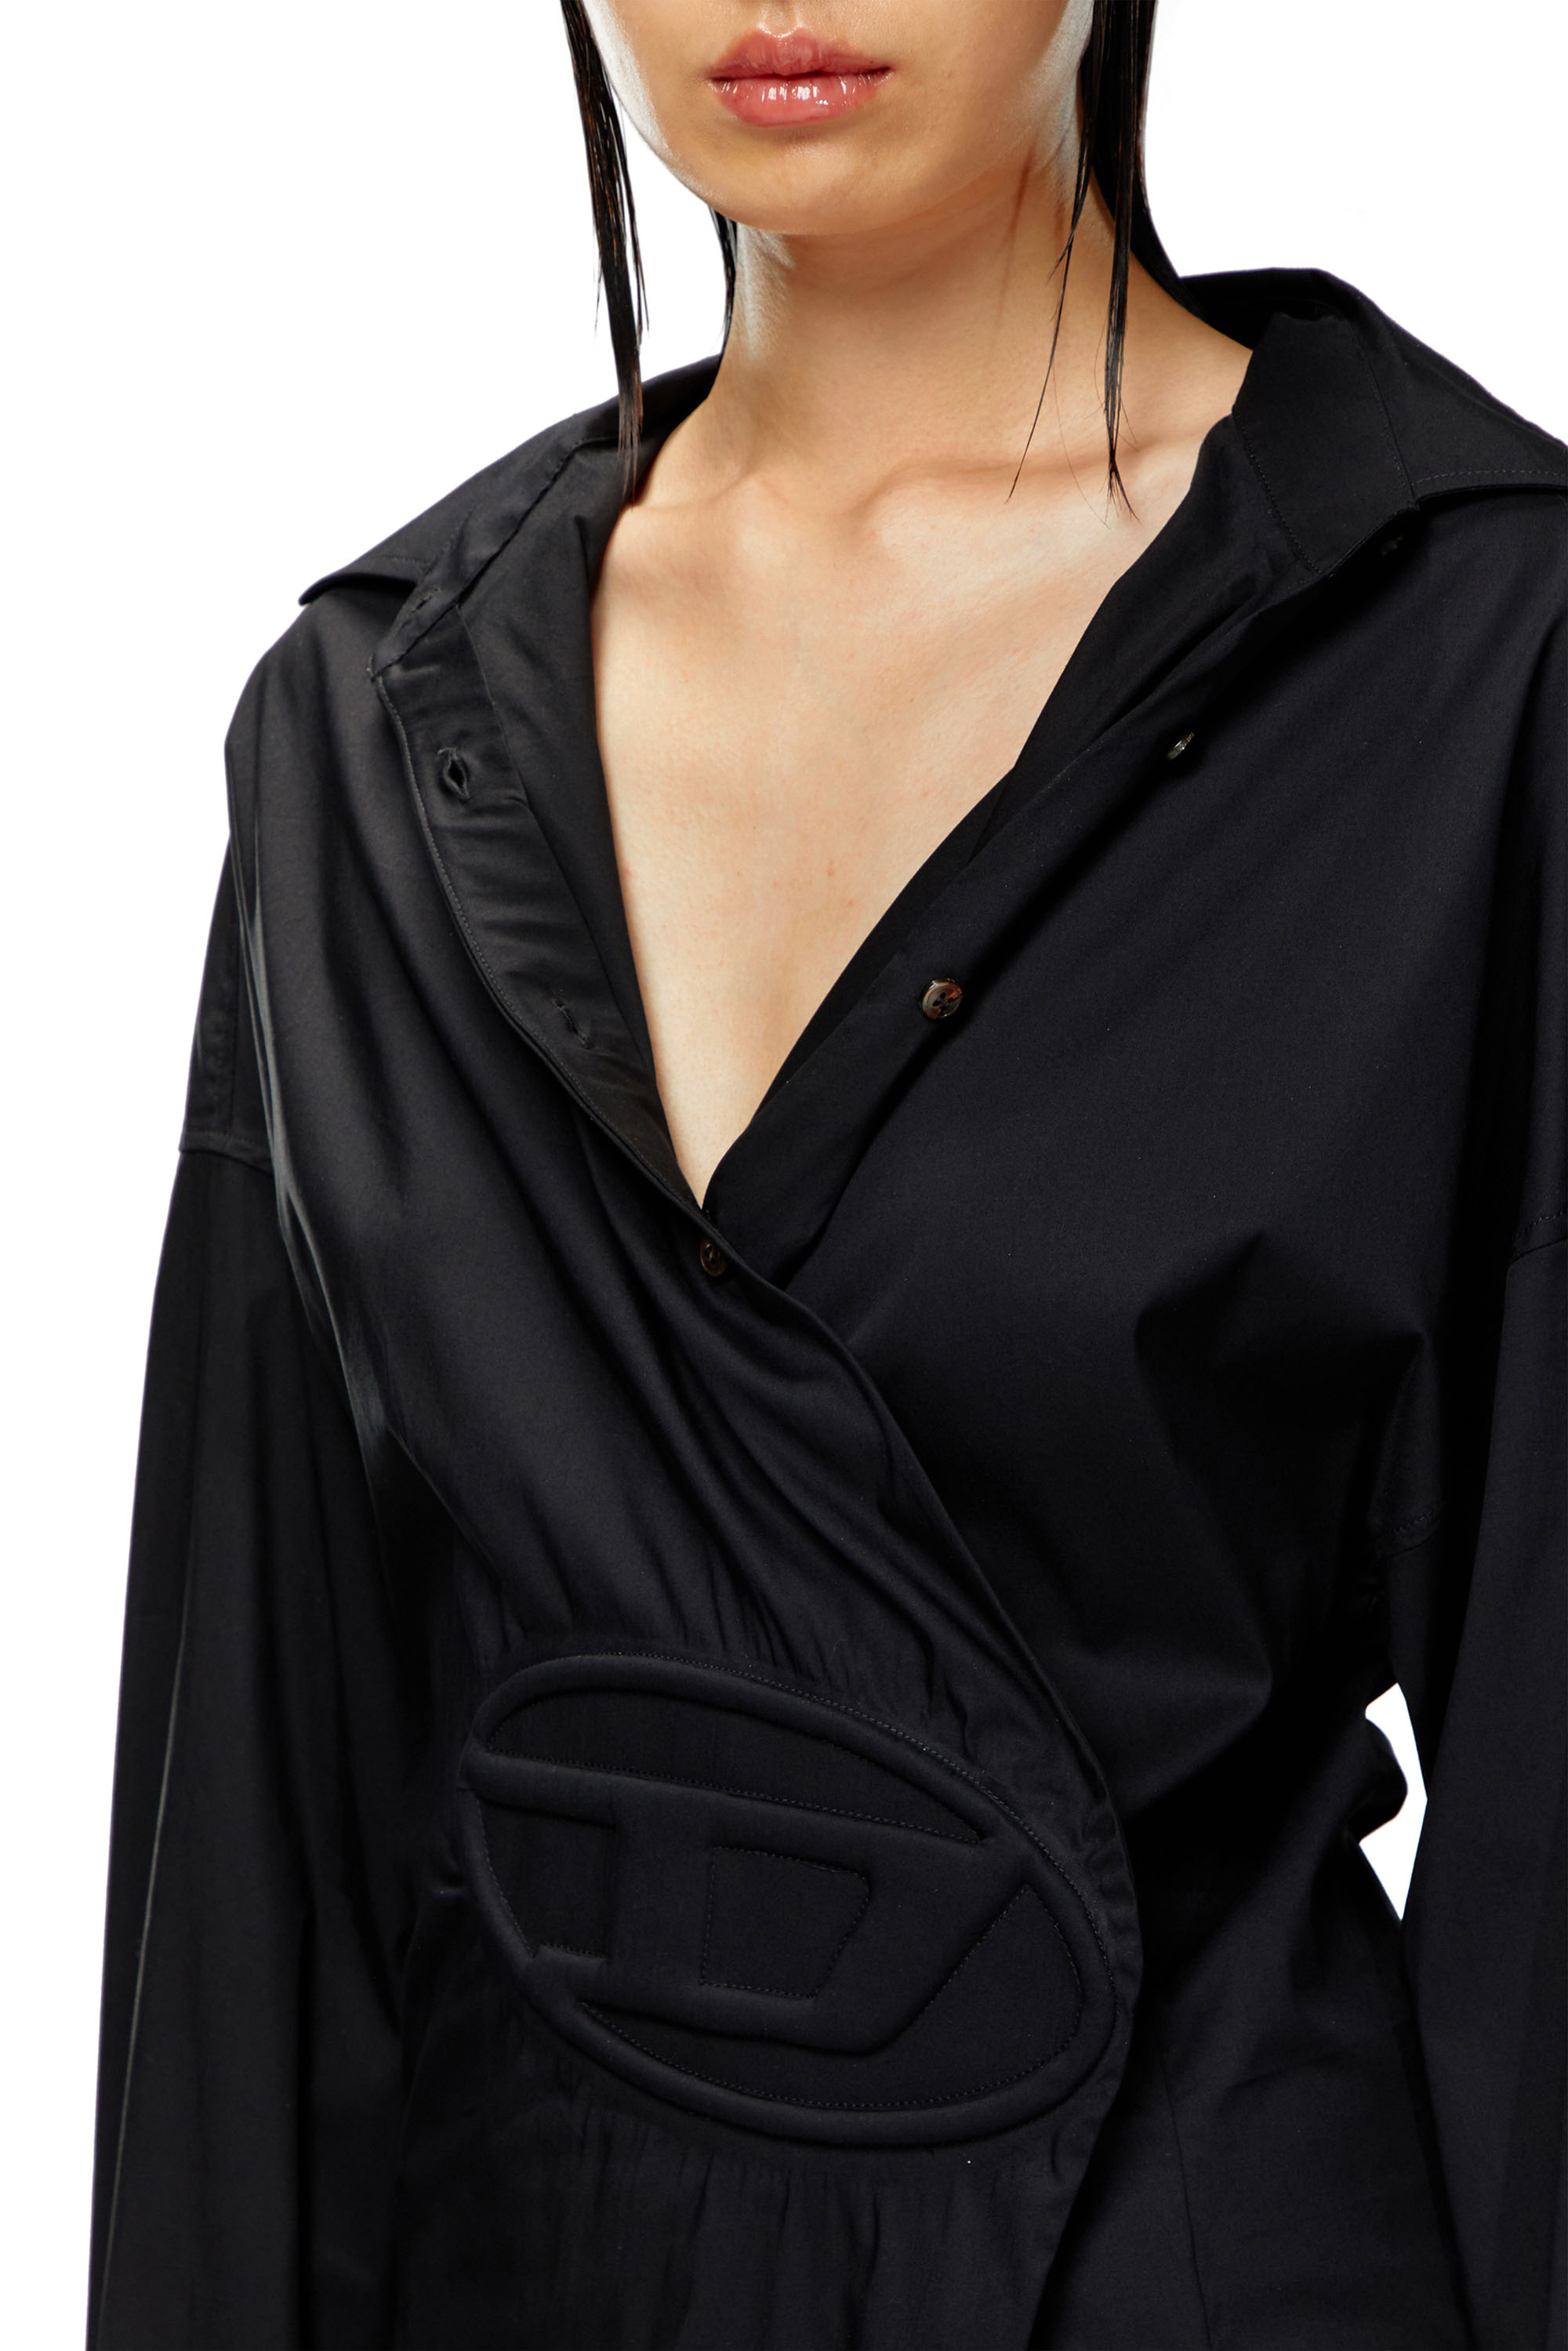 Diesel - D-SIZEN-N1, Woman Short shirt dress in stretch poplin in Black - Image 3